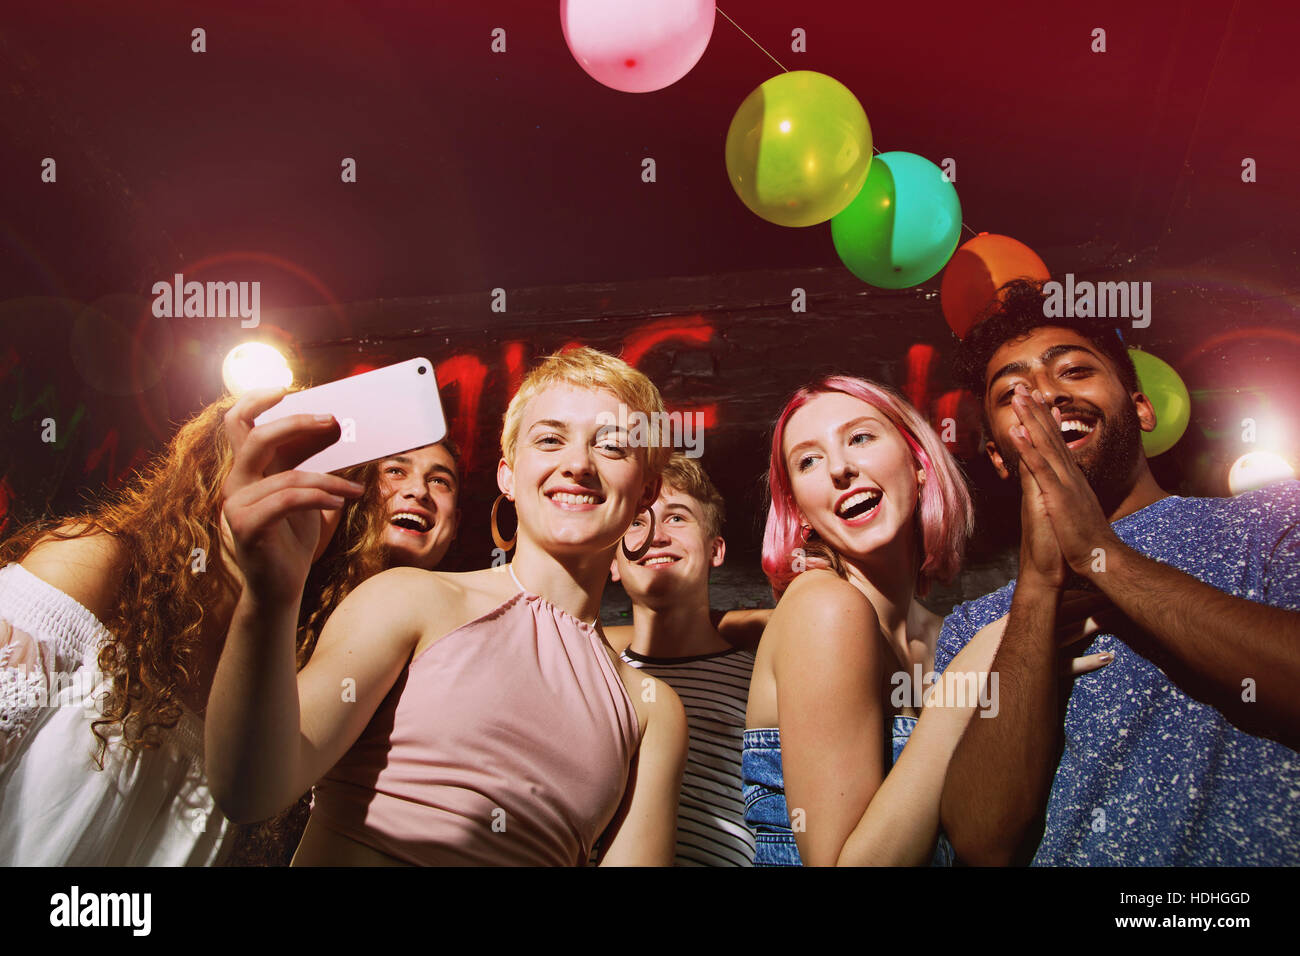 Angolo basso ritratto di donna felice tenendo selfie con gli amici in cantiere Foto Stock